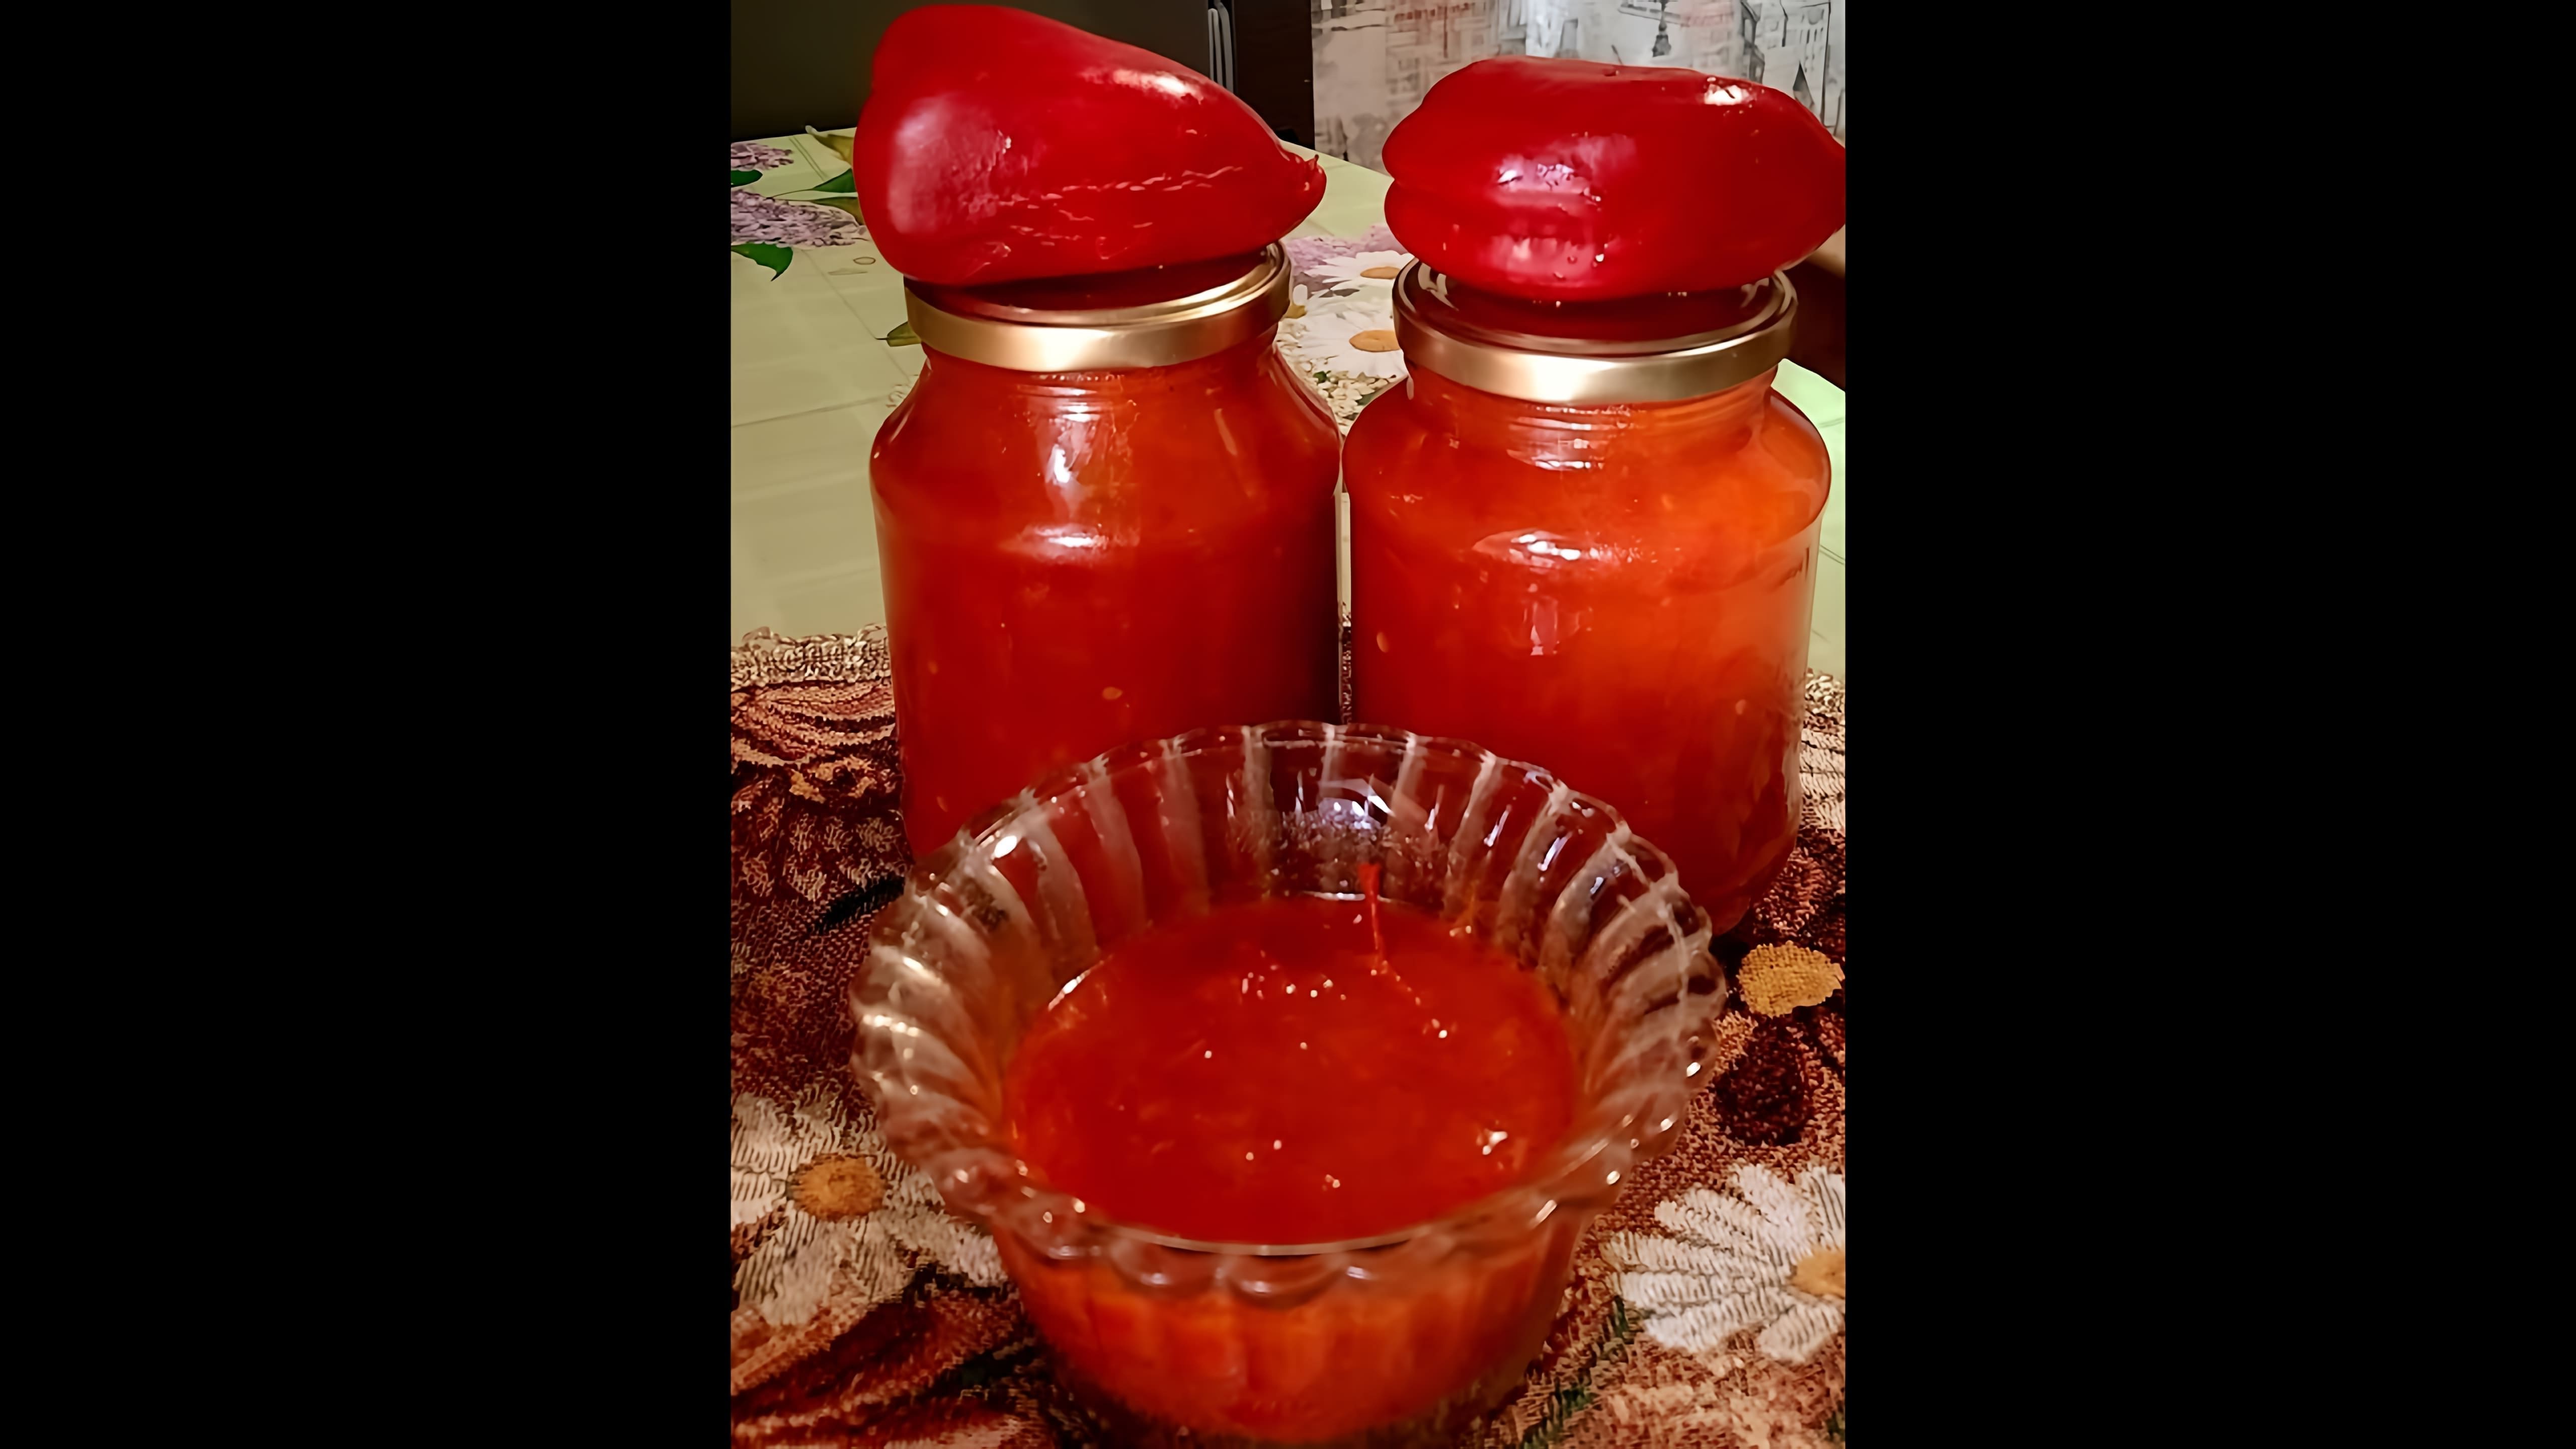 Видео как приготовить томатный и перченый соус под названием "лечо", который является традиционным домашним консервированным приправой